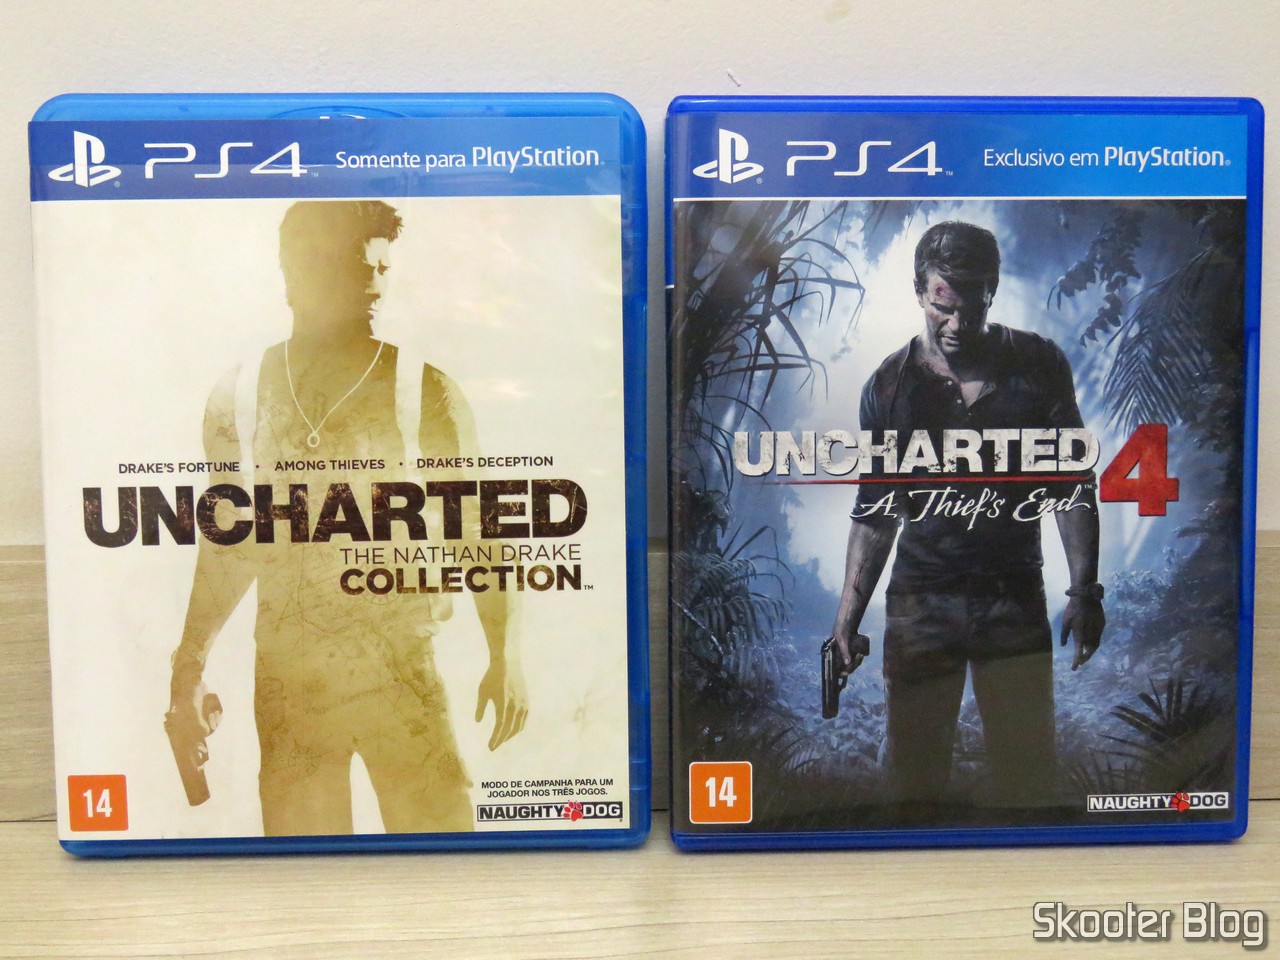 Jogo Uncharted 4: A Thief's End - PS4 em Promoção na Americanas